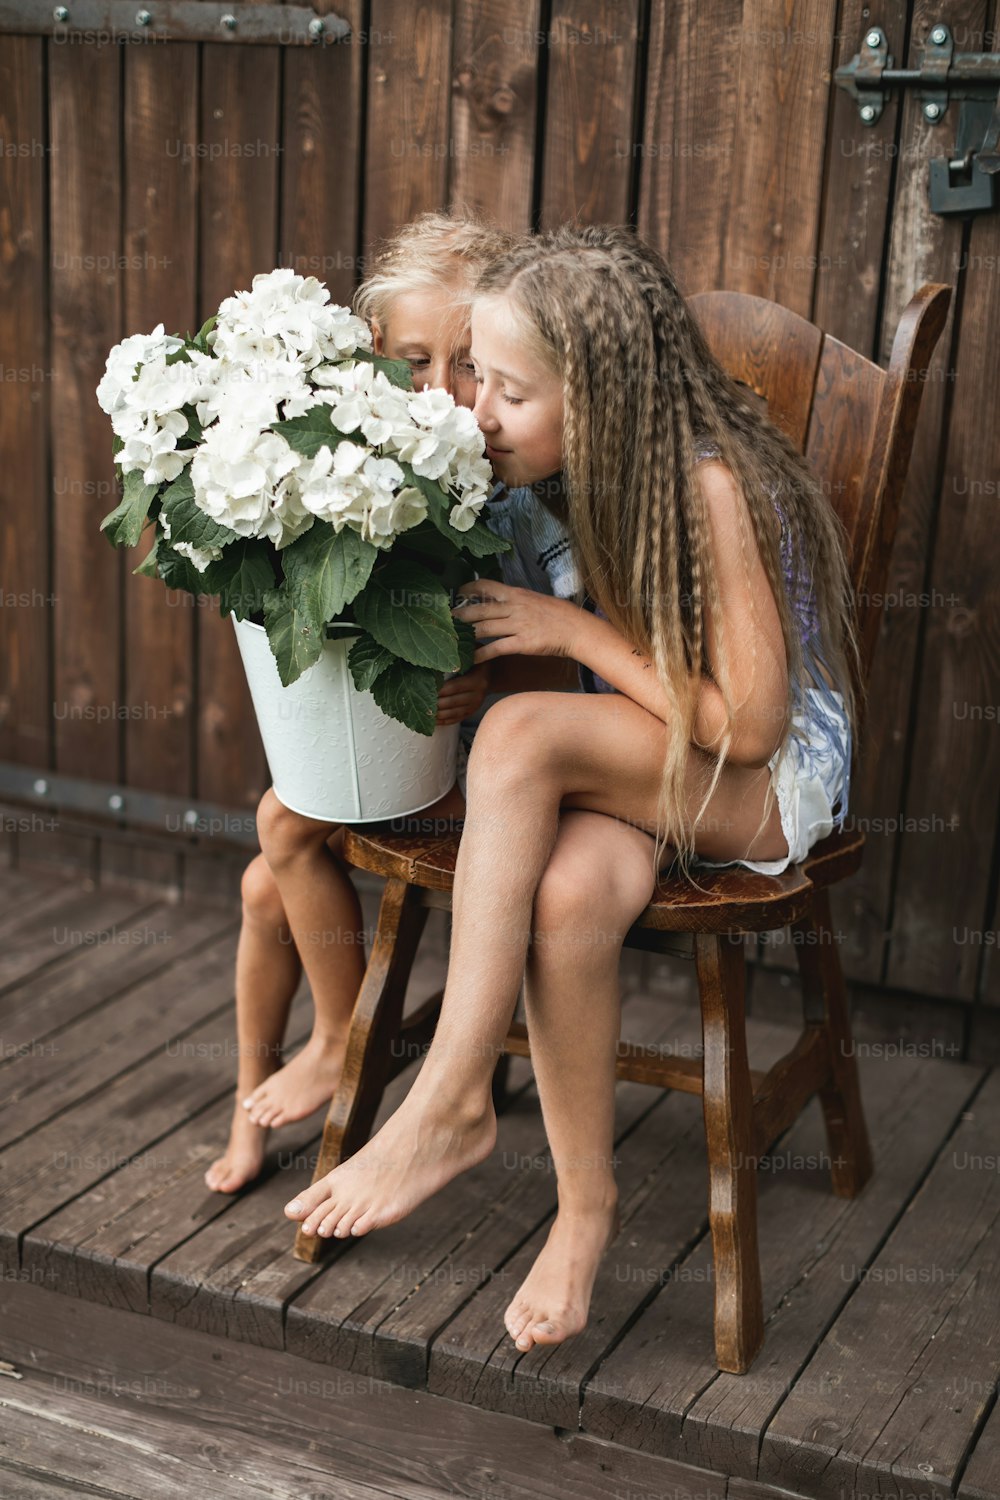 Kinder und Blumen, Sommer, Landschaft und Spaß. Sommerurlaub. Zwei hübsche kleine Mädchen sitzen auf dem Stuhl vor der Holzscheune und riechen Hortensienblüten in einem großen weißen Eimer.